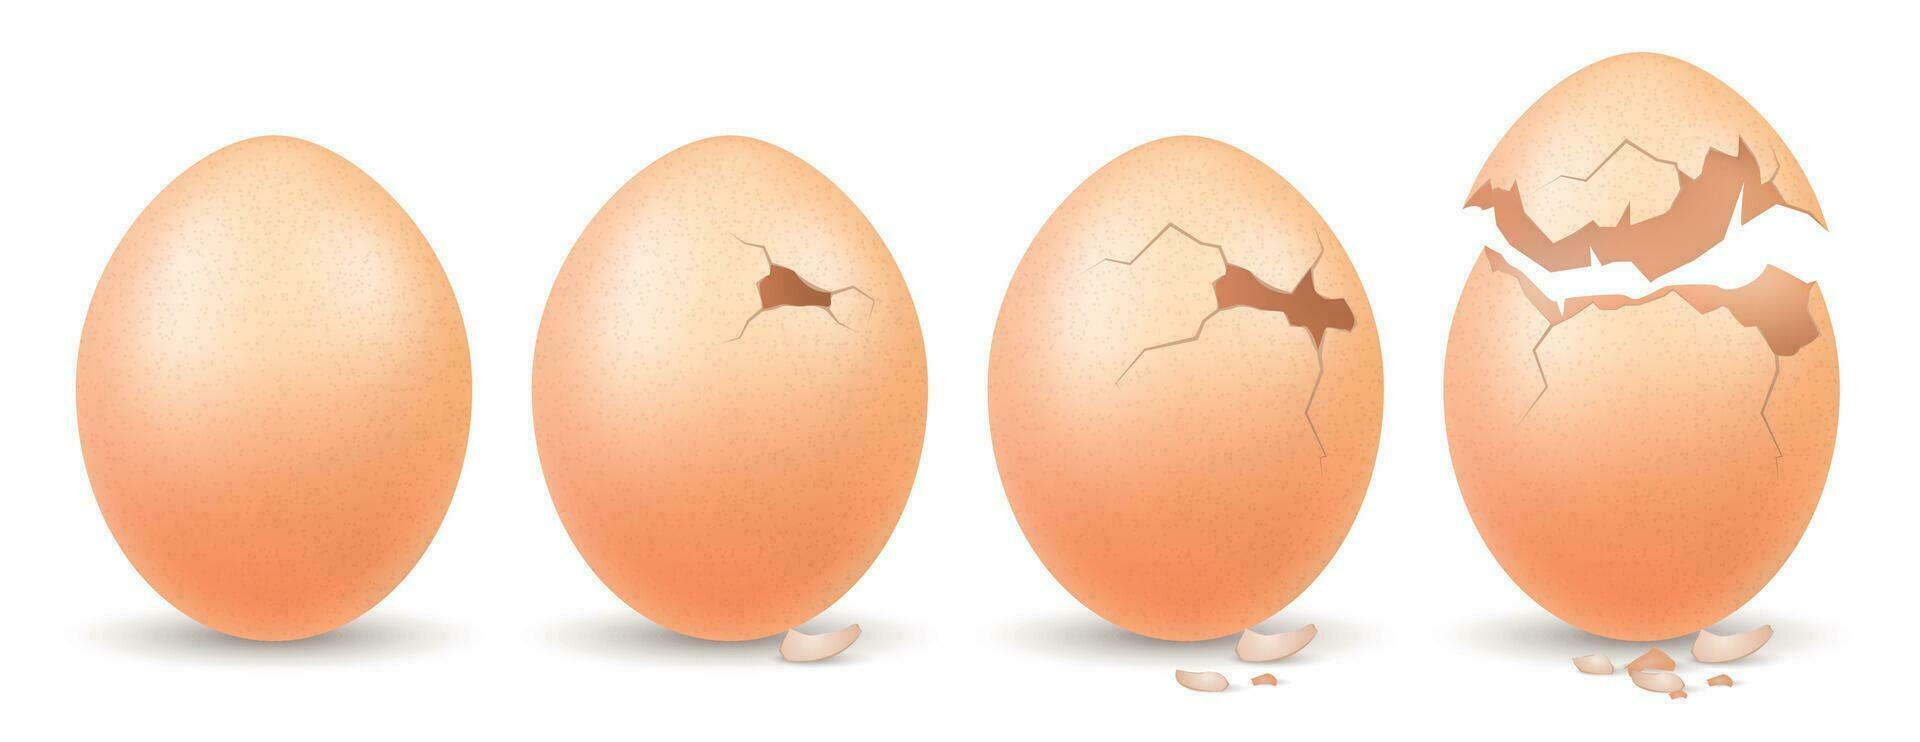 bruka ägg realistisk begrepp vektor